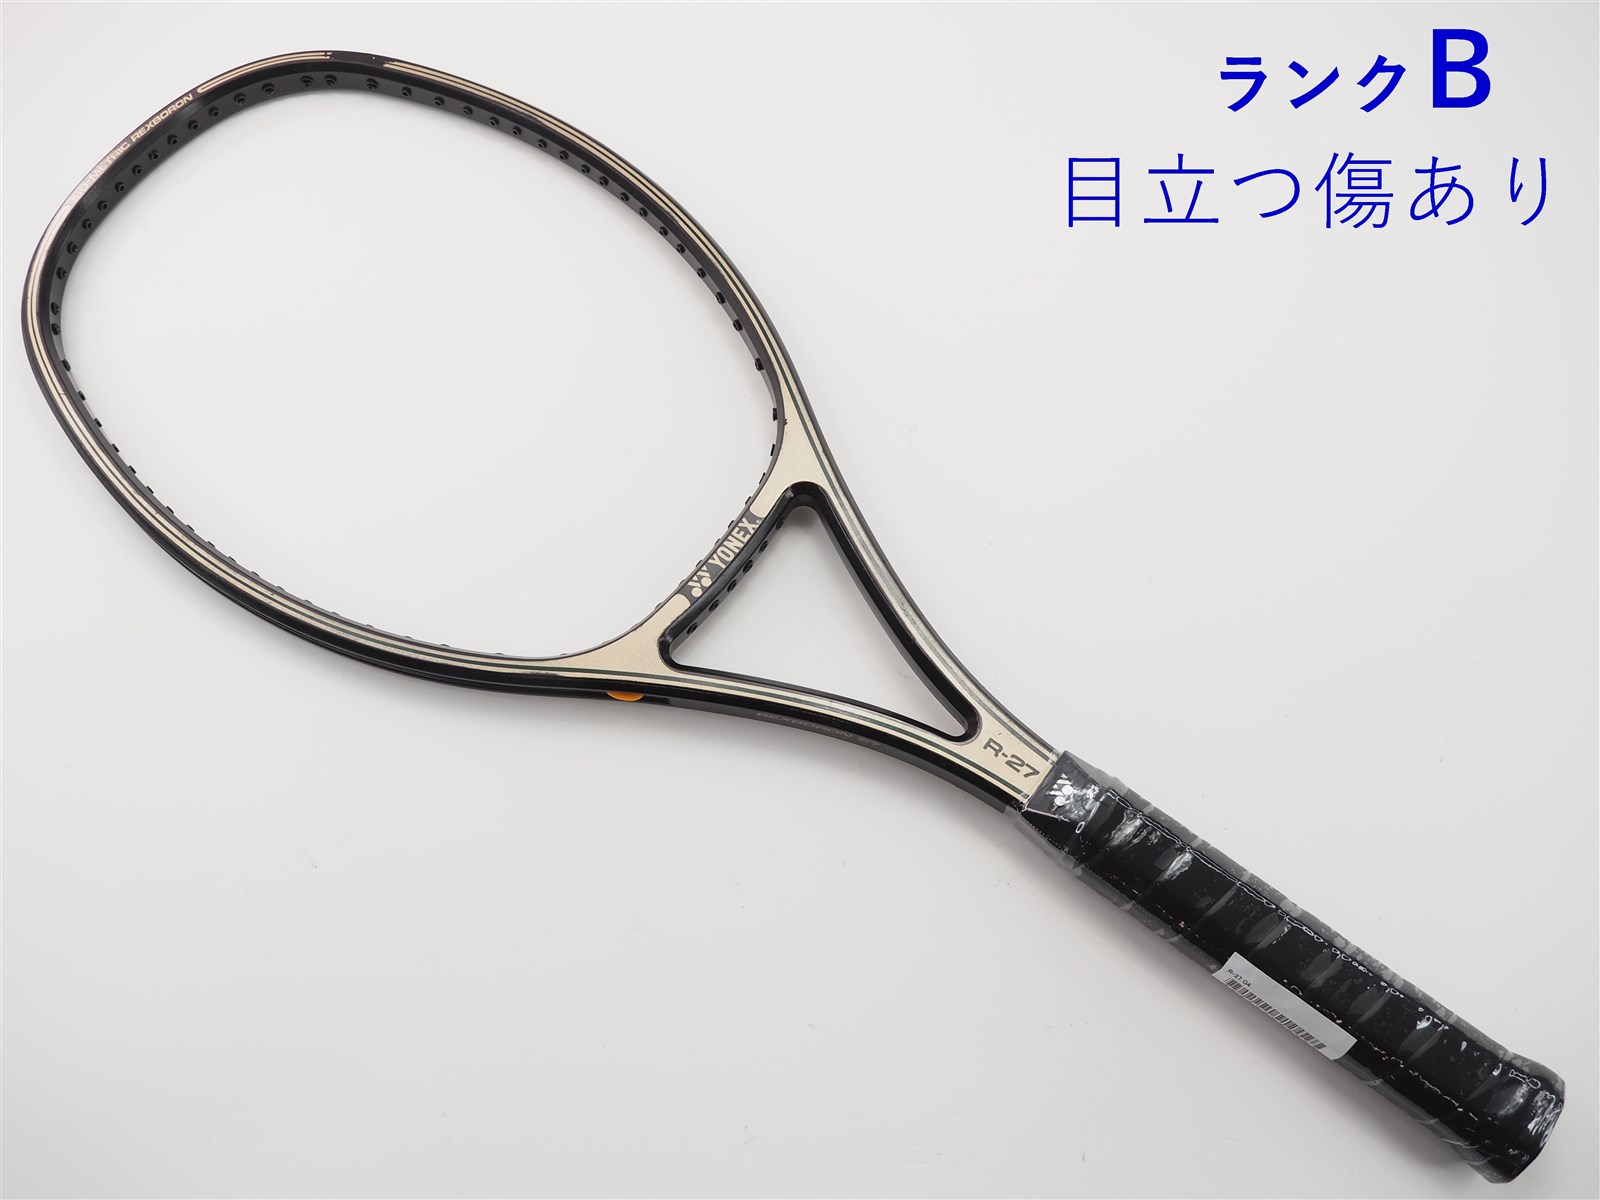 テニスラケット ヨネックス レックスボロン 27 (G3 相当)YONEX R-27